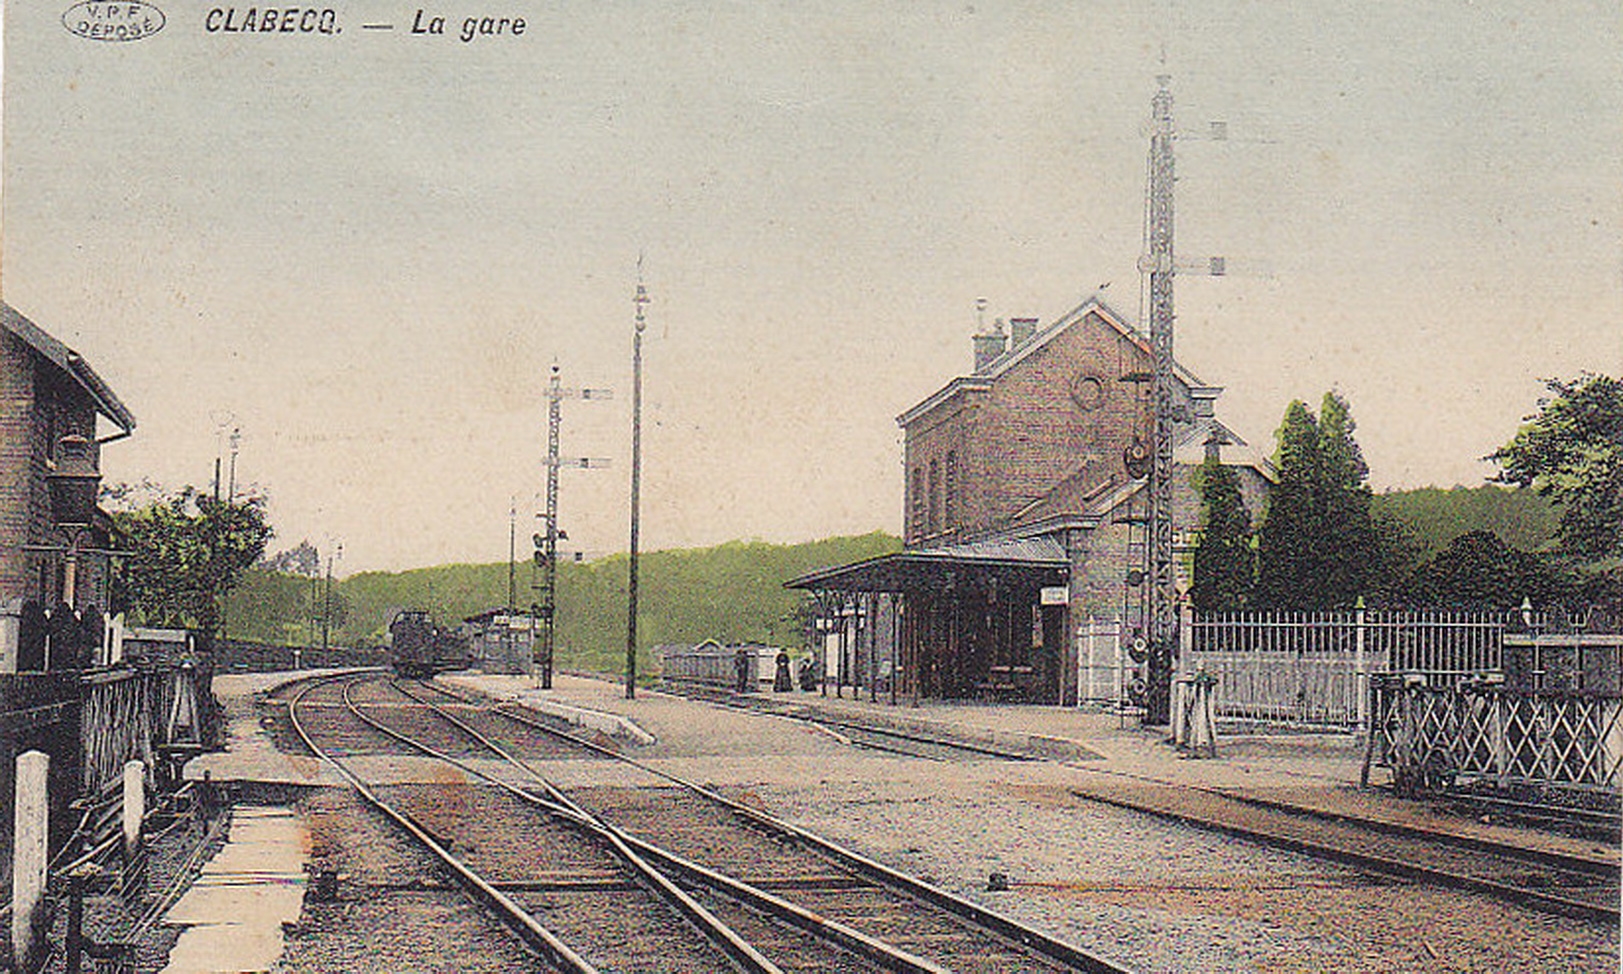 La_gare - Gare_Clabecq_-10